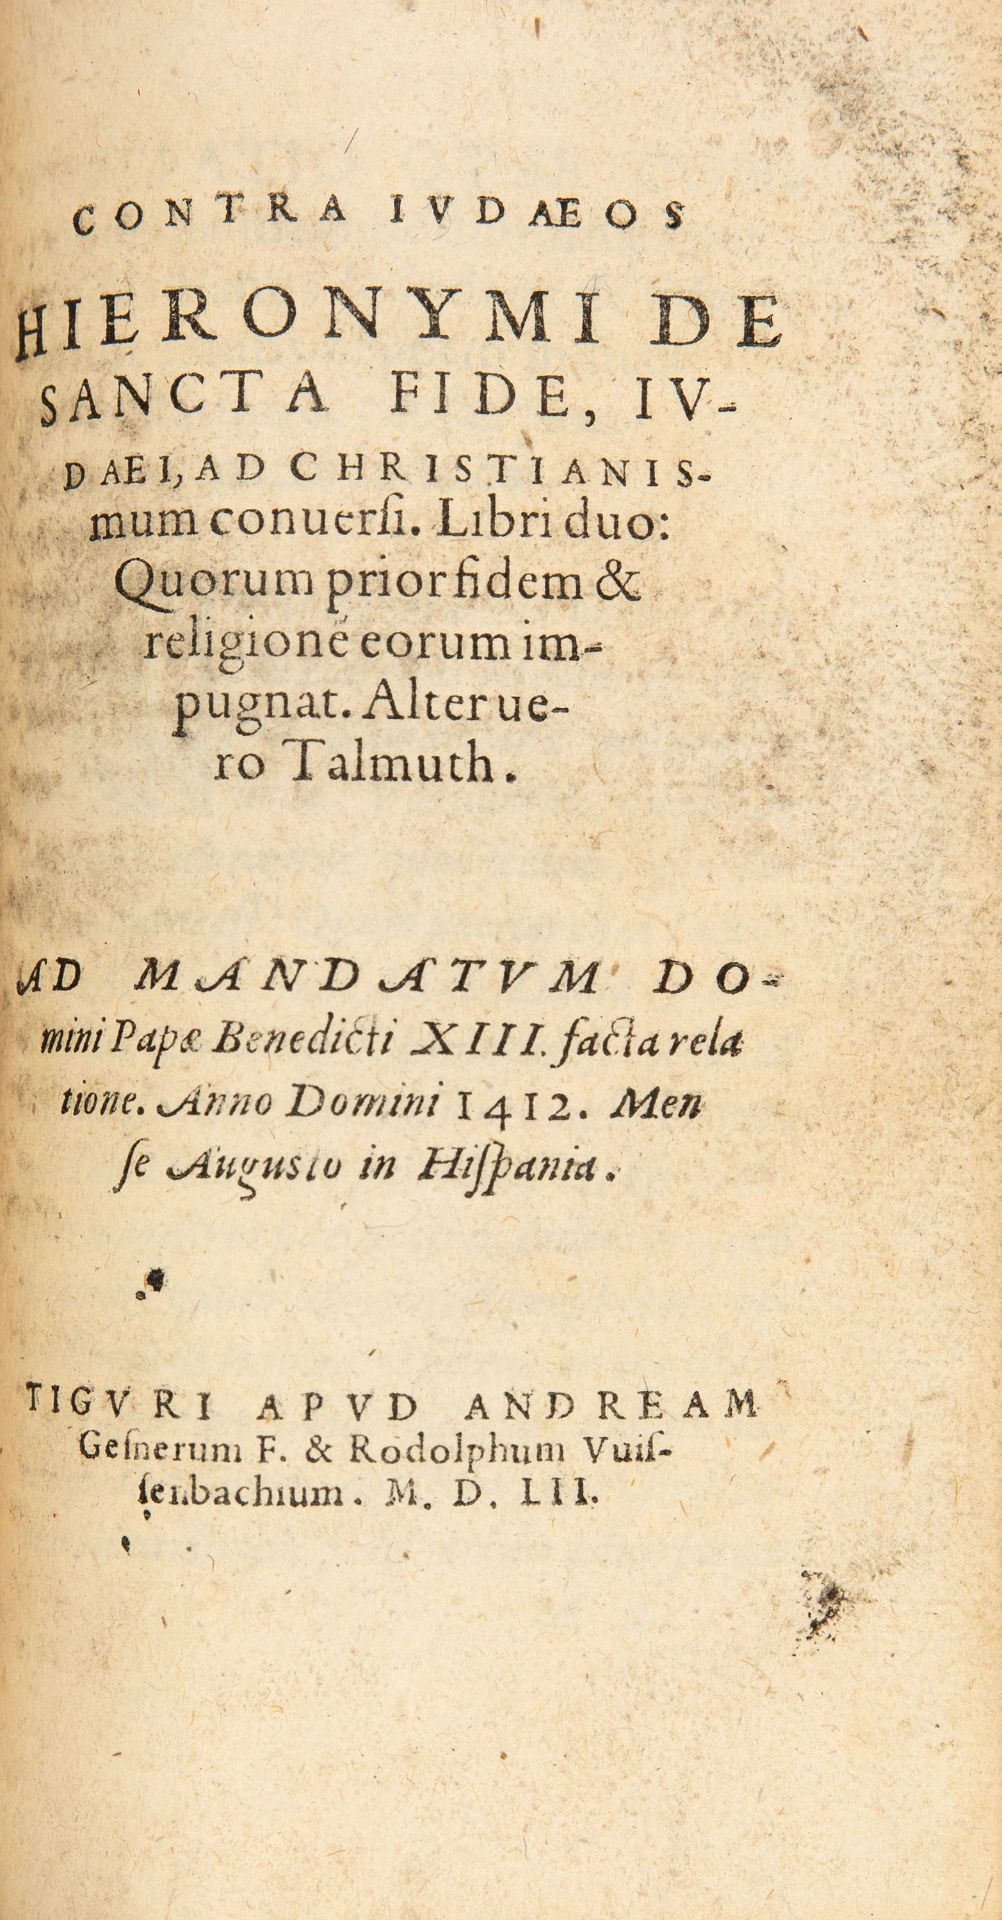 P. Canisius, Summa Doctrinae Christianae, per quaestiones luculenter conscripta. Köln 1566.